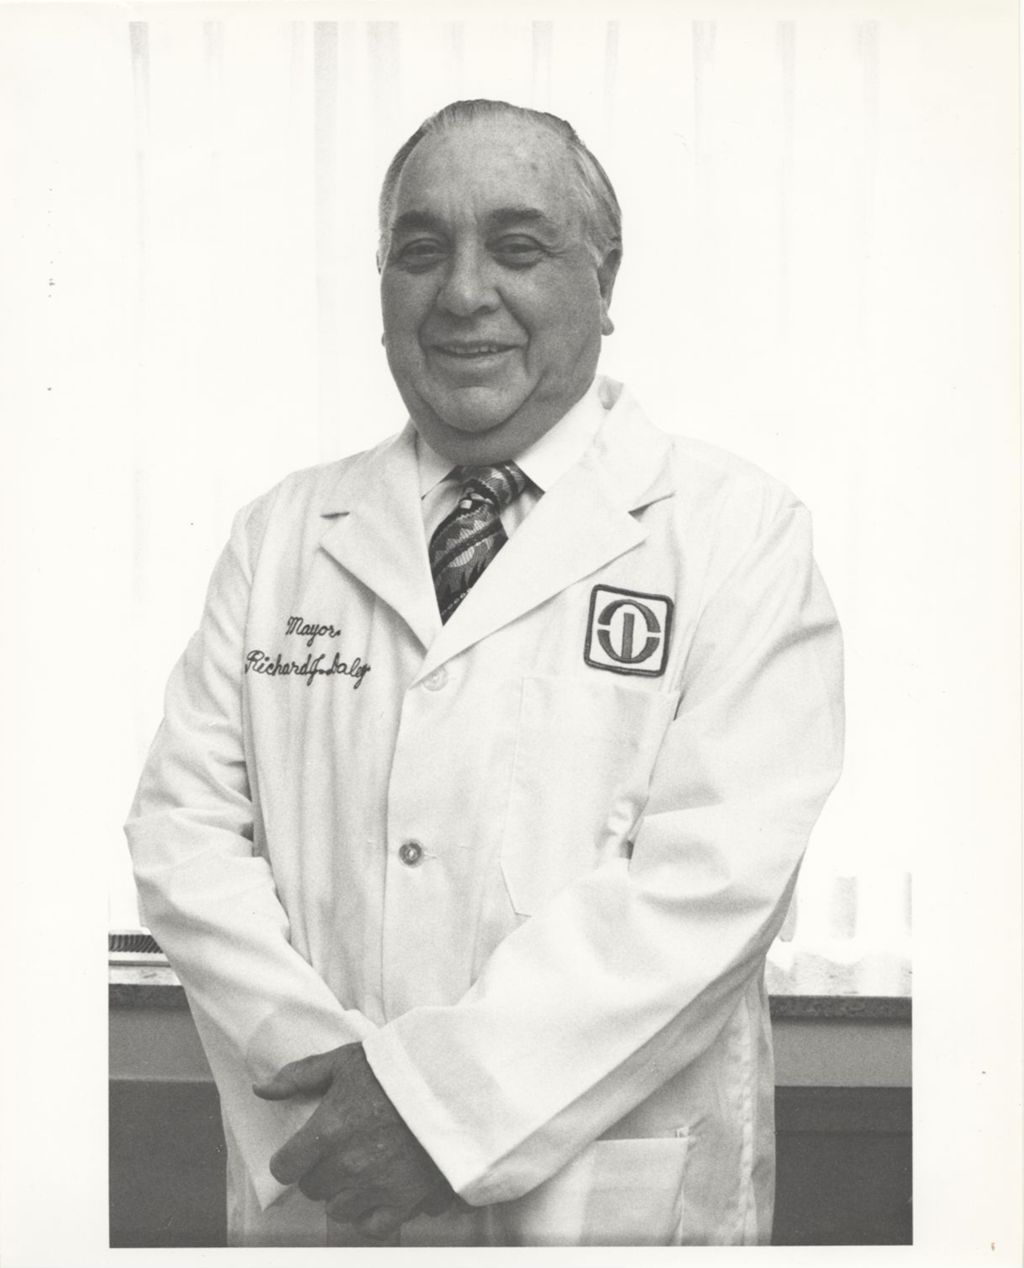 Miniature of Richard J. Daley at Rush-Presbyterian-St. Luke's Medical Center